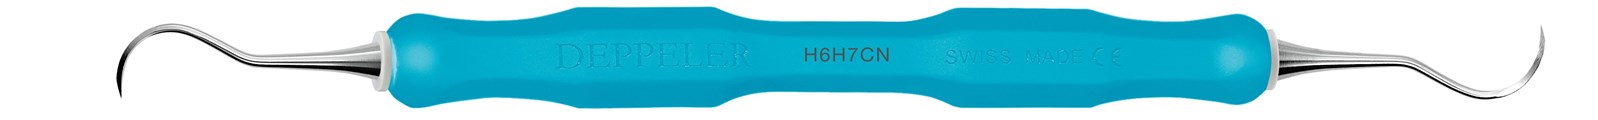 Scaler univerzální - H6H7, CLEANext (zelená)